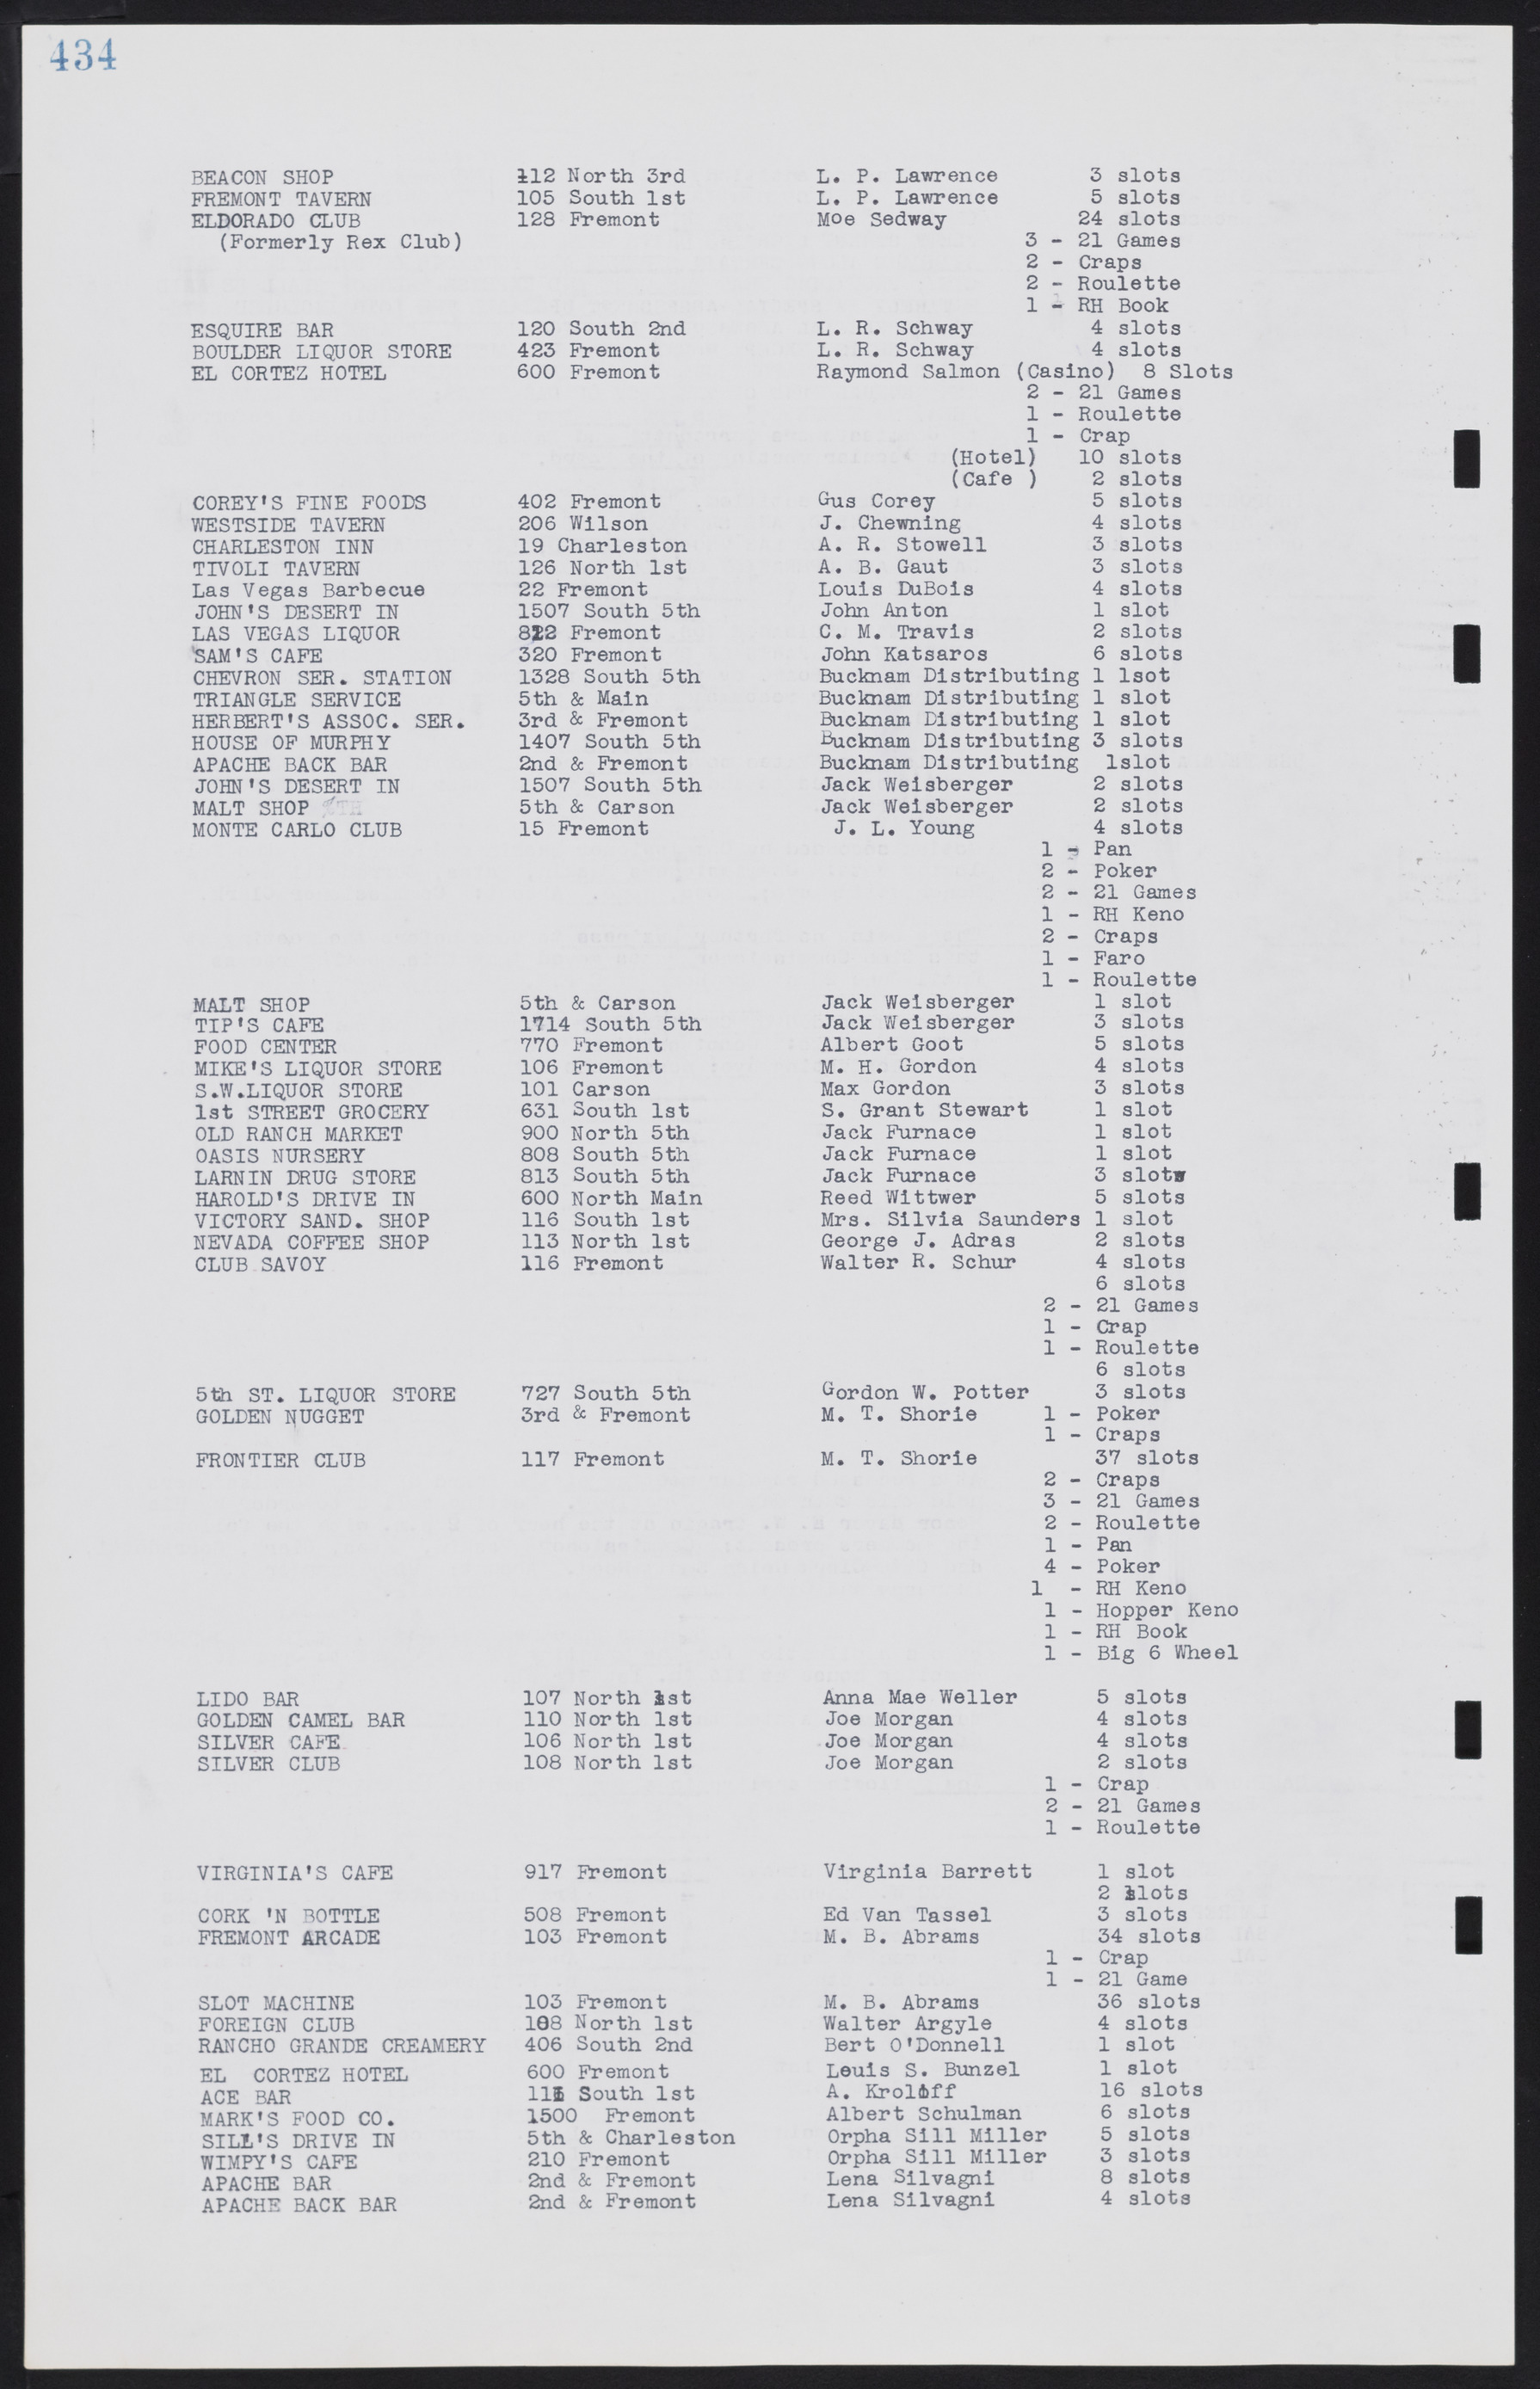 Las Vegas City Commission Minutes, August 11, 1942 to December 30, 1946, lvc000005-462